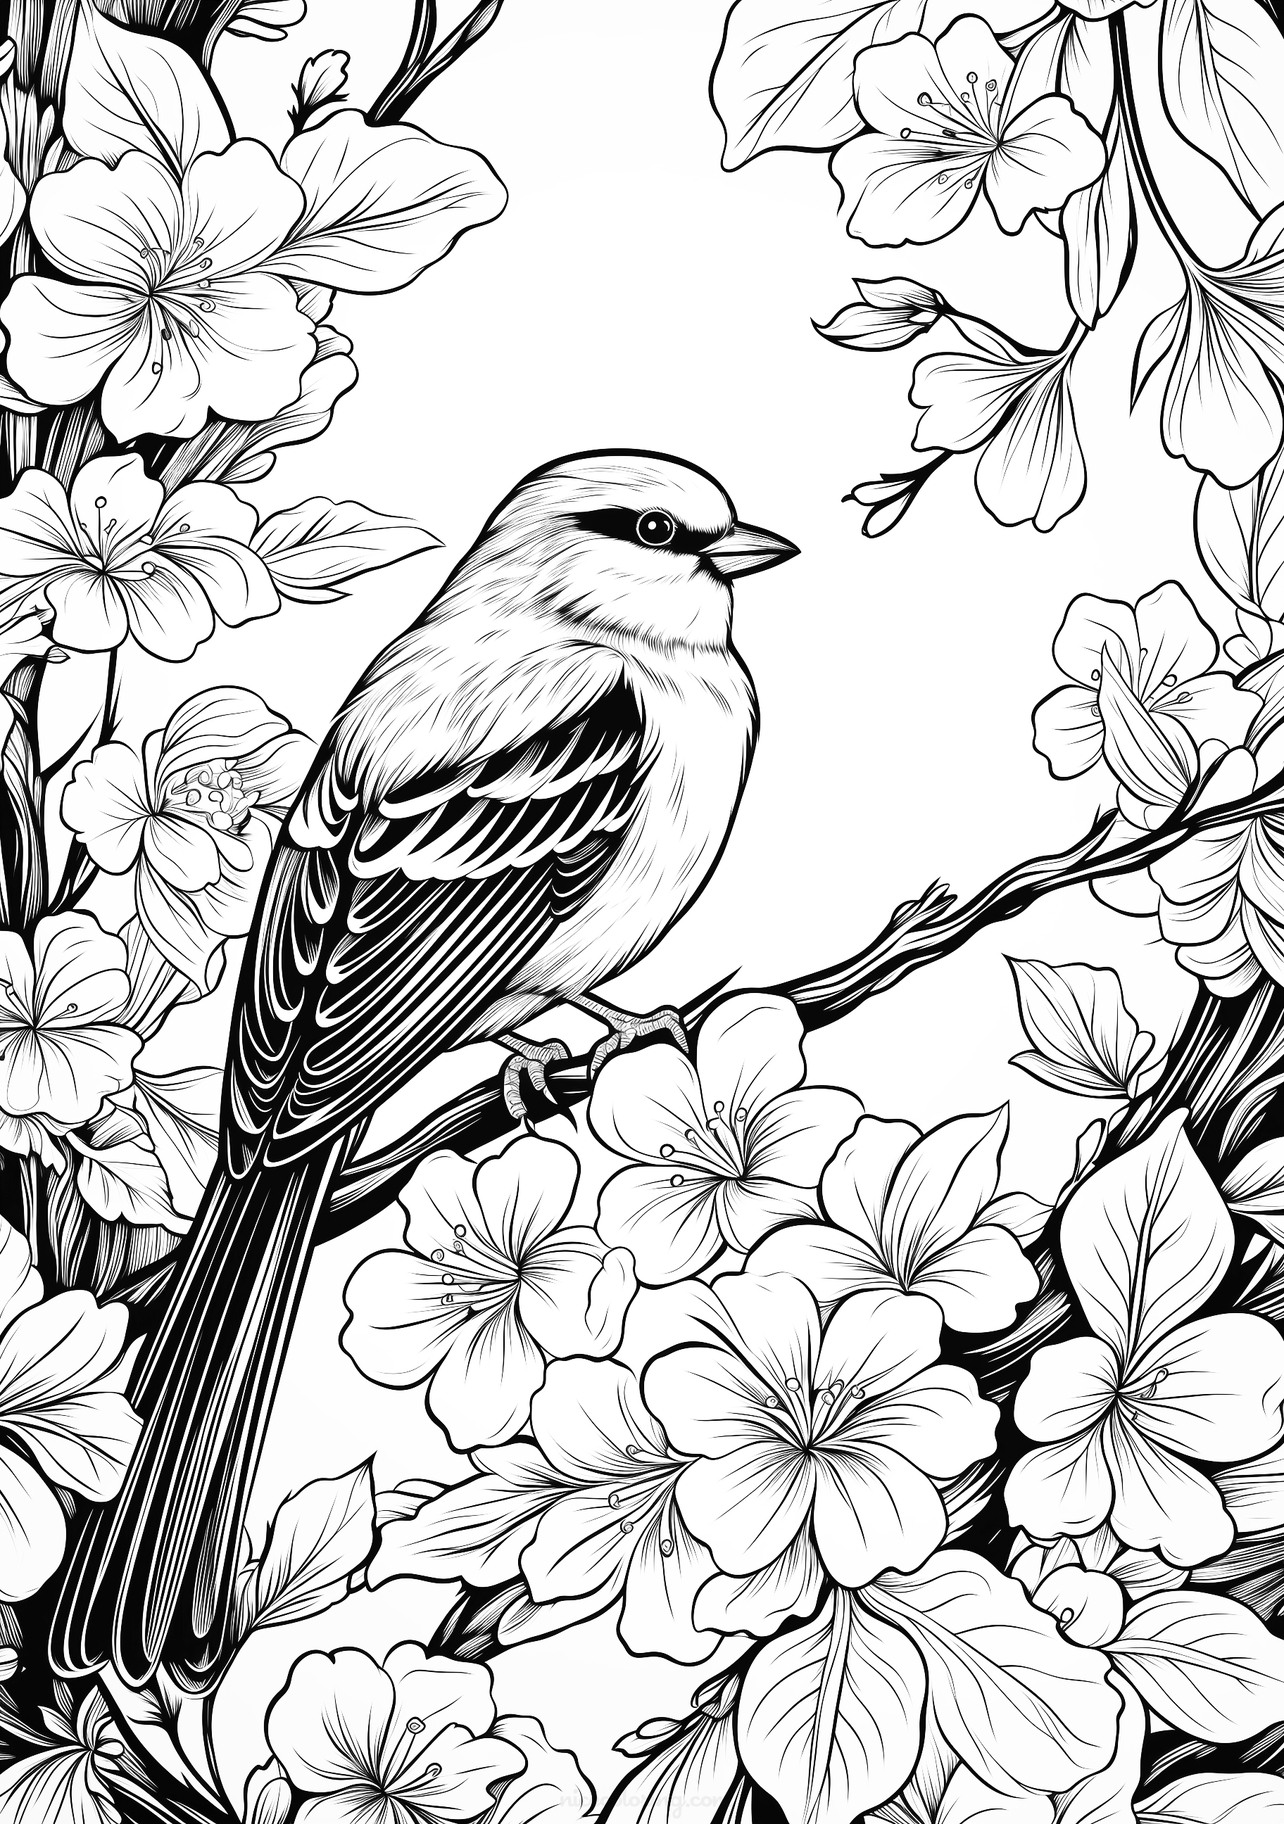 પક્ષી અને ફૂલો સાથેની રંગભરણીની ચિત્ર